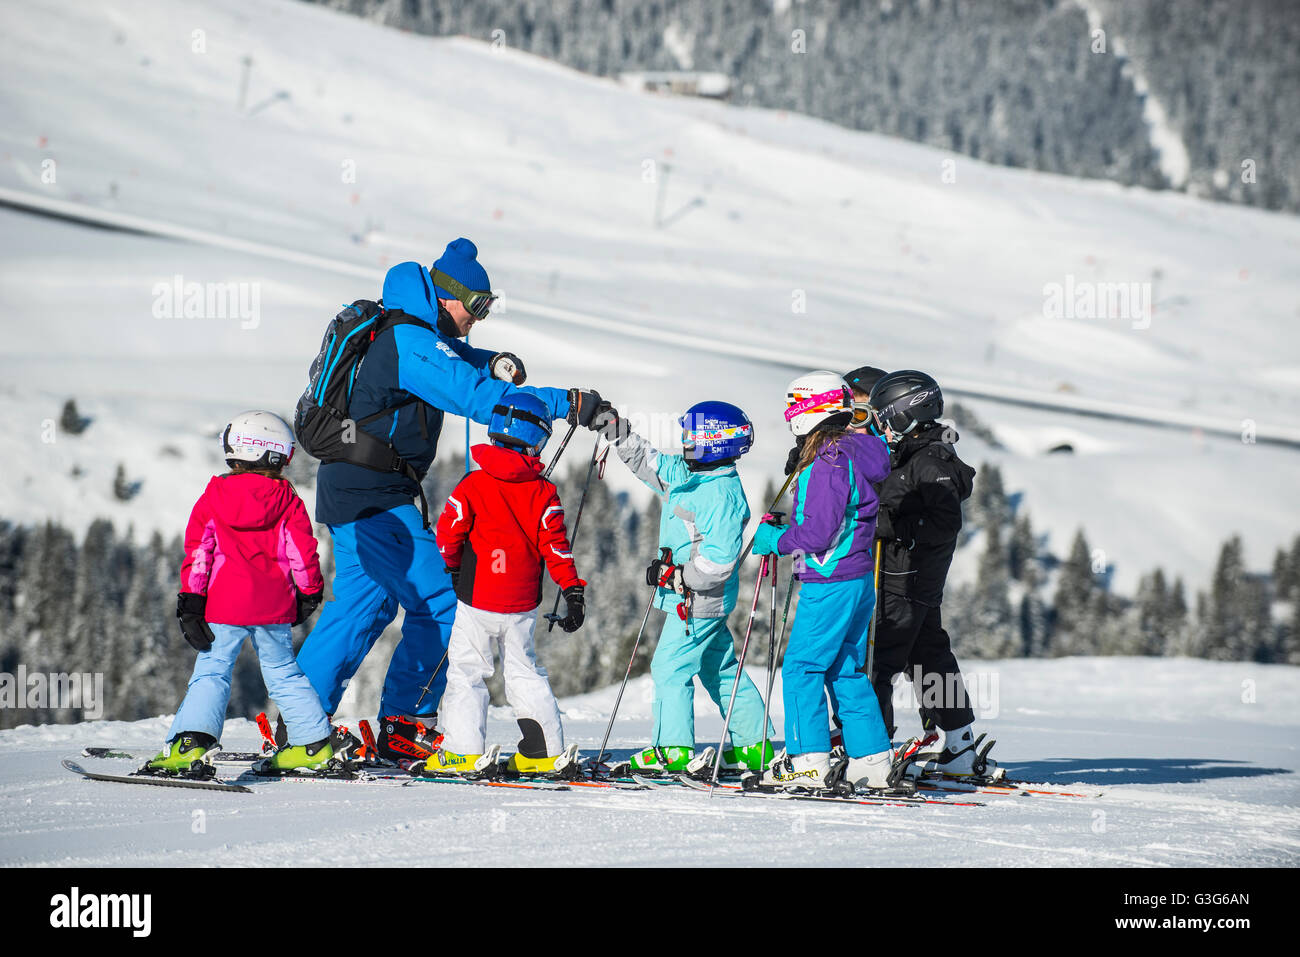 Un moniteur de ski enseigne à un groupe d'enfants dans la station de ski française de Courchevel. Banque D'Images